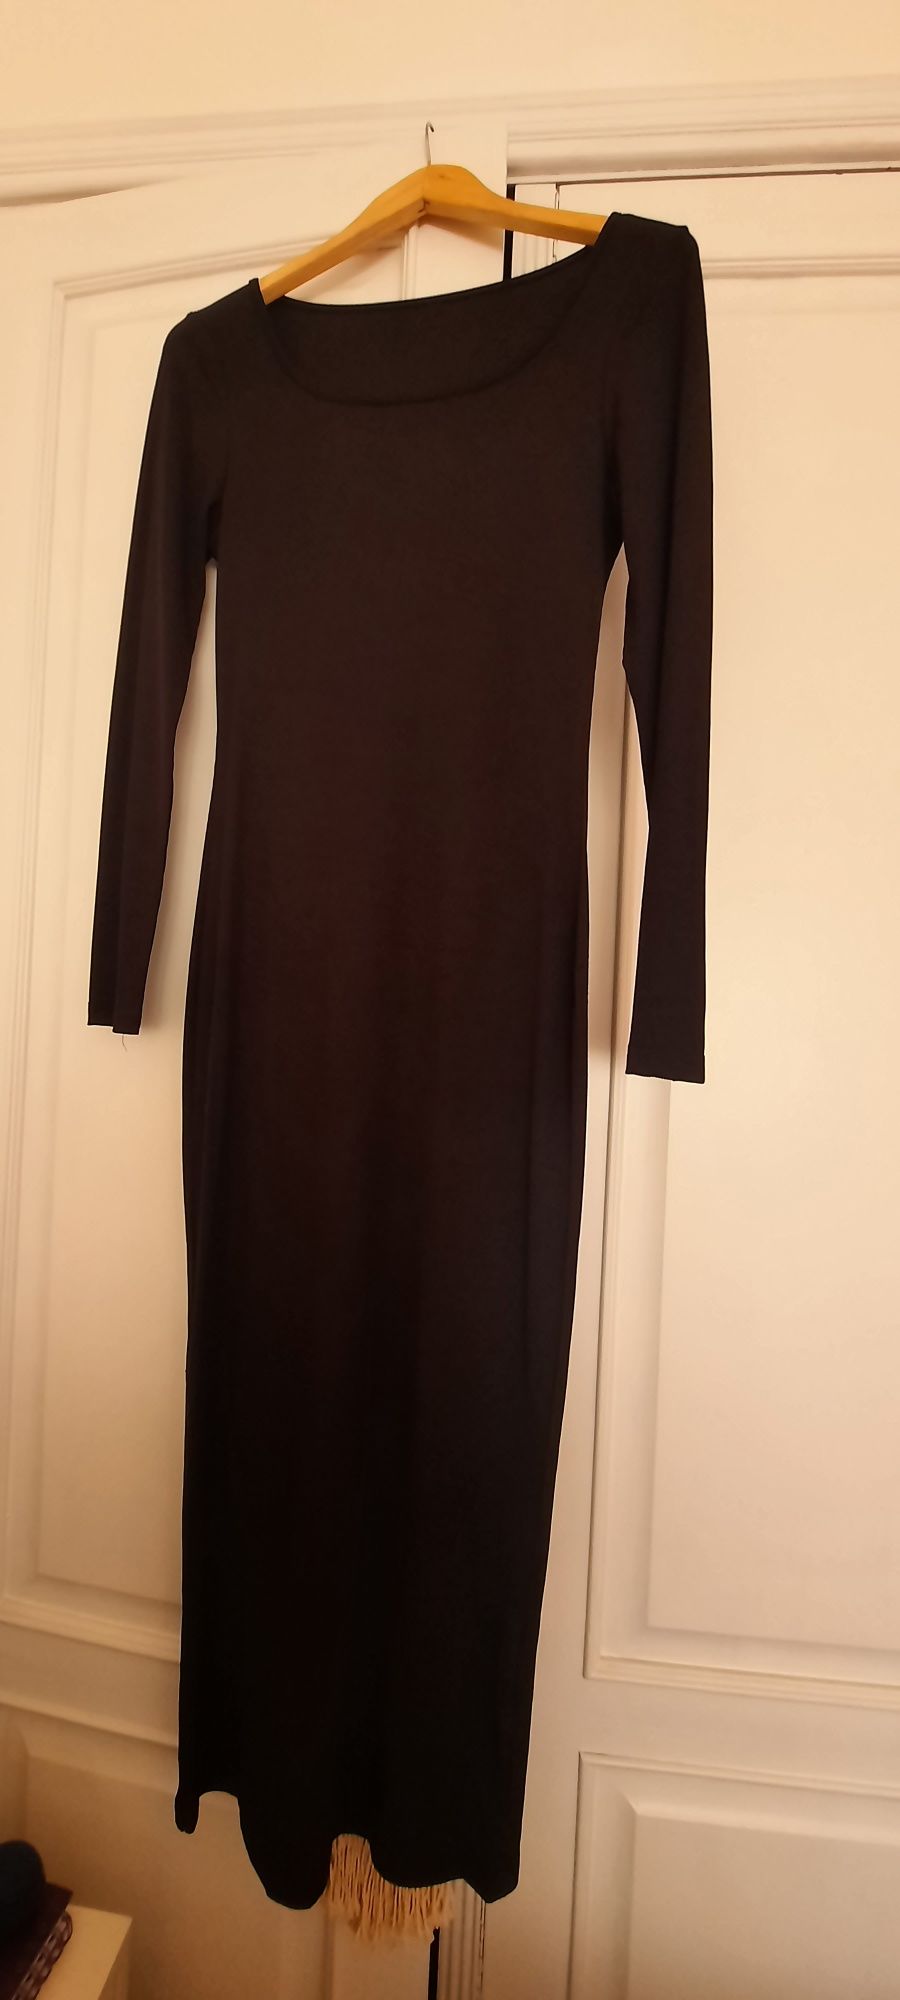 Vestido preto de malha manga comprida tamanho único